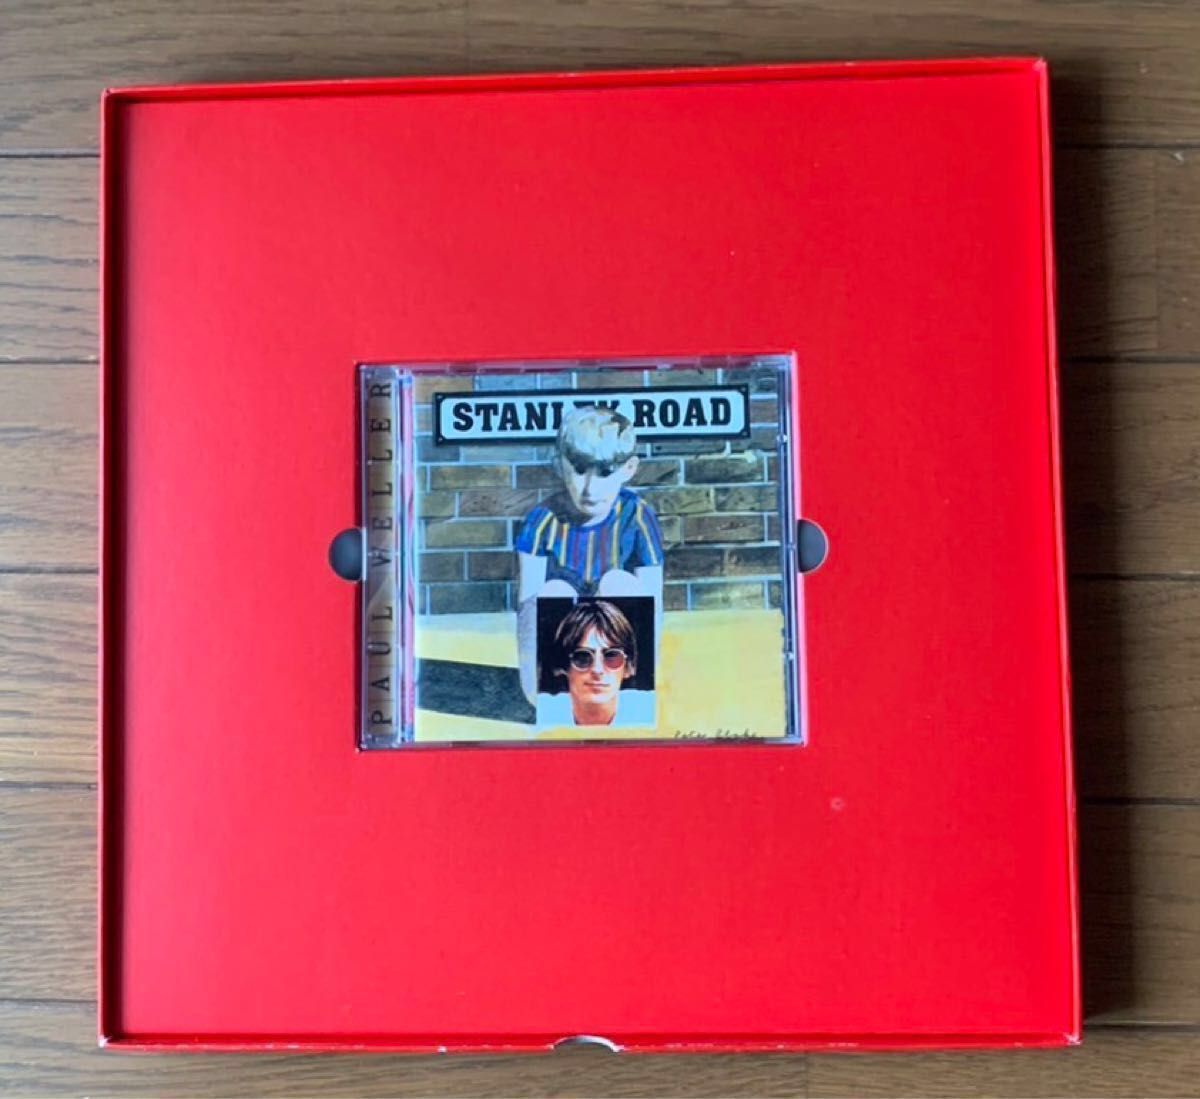  レア 限定BOX付 Paul Weller スタンリーロード CD 未使用品